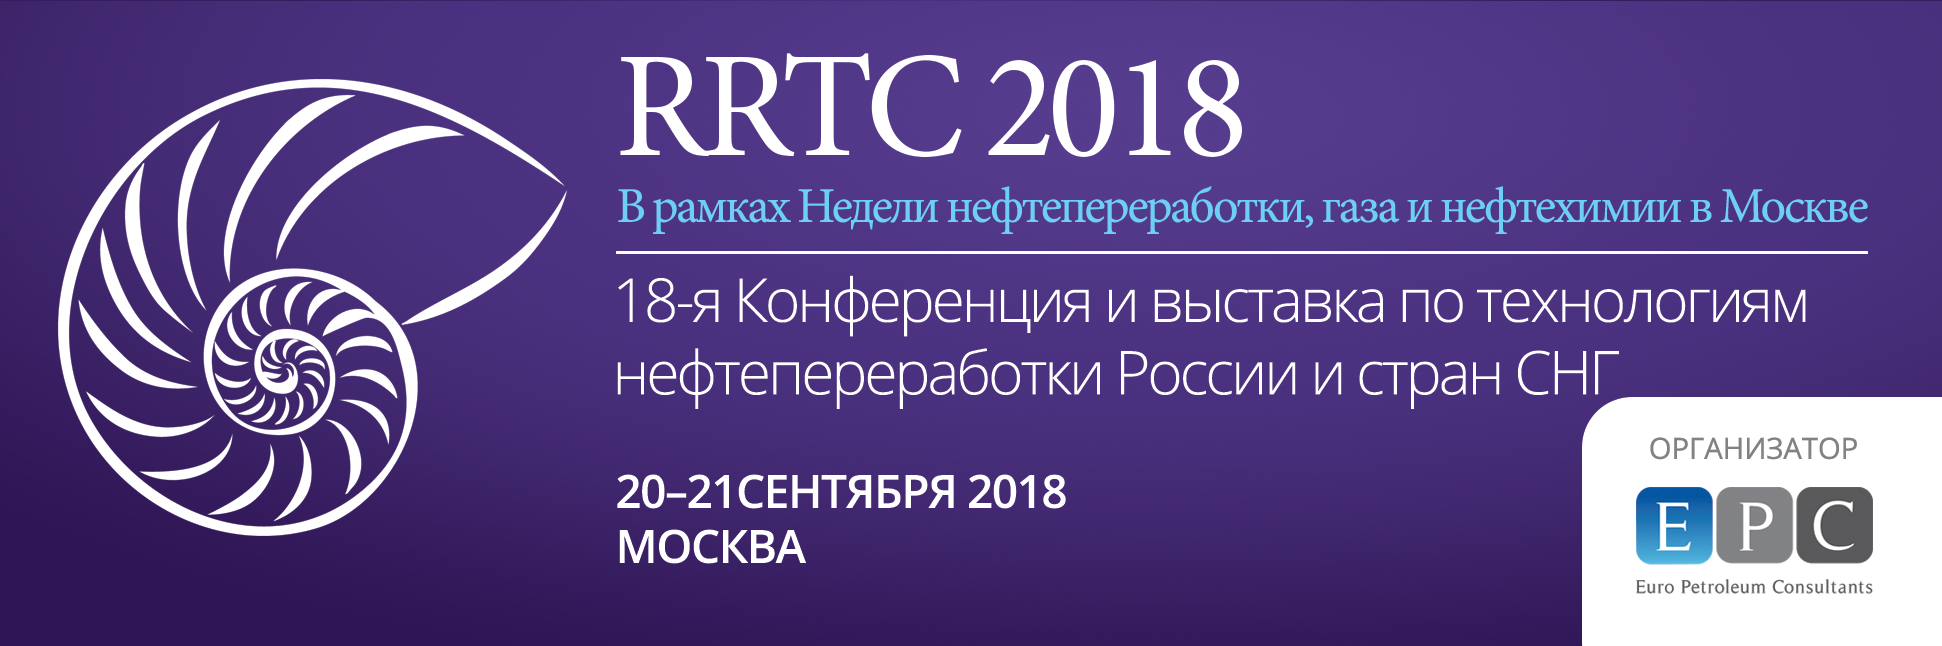 RRTC 2018